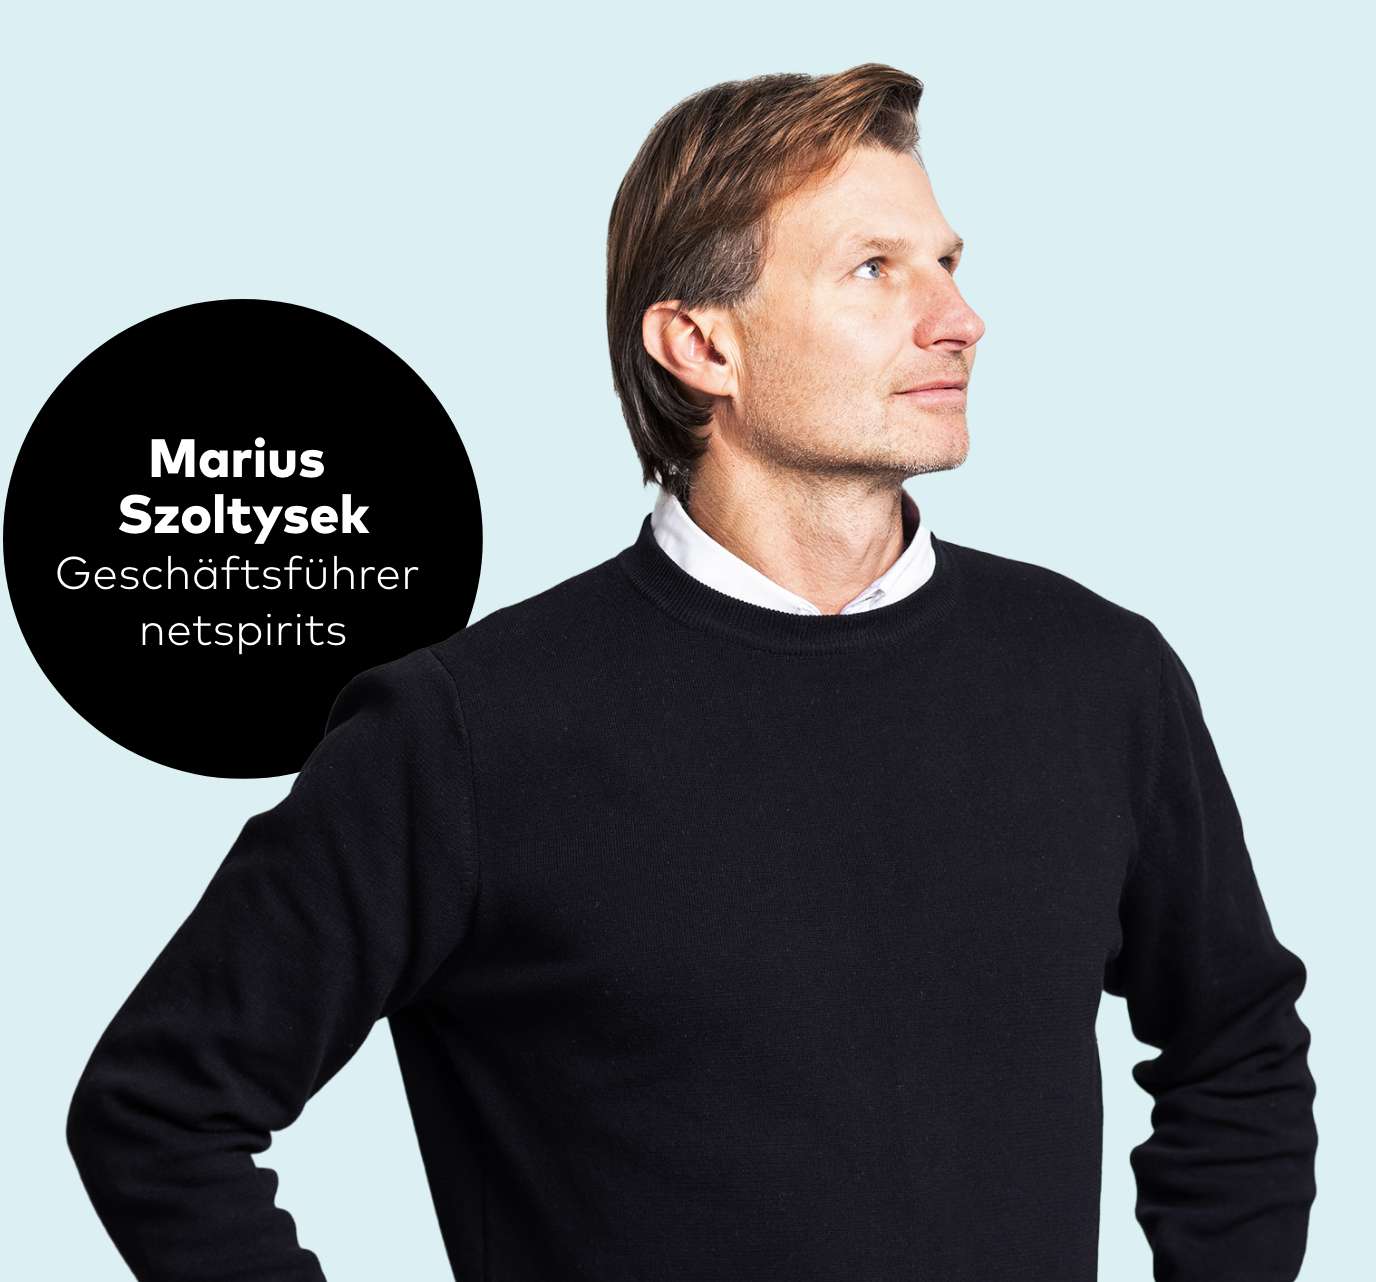 Marius Szoltysek | Geschäftsführer netspirits